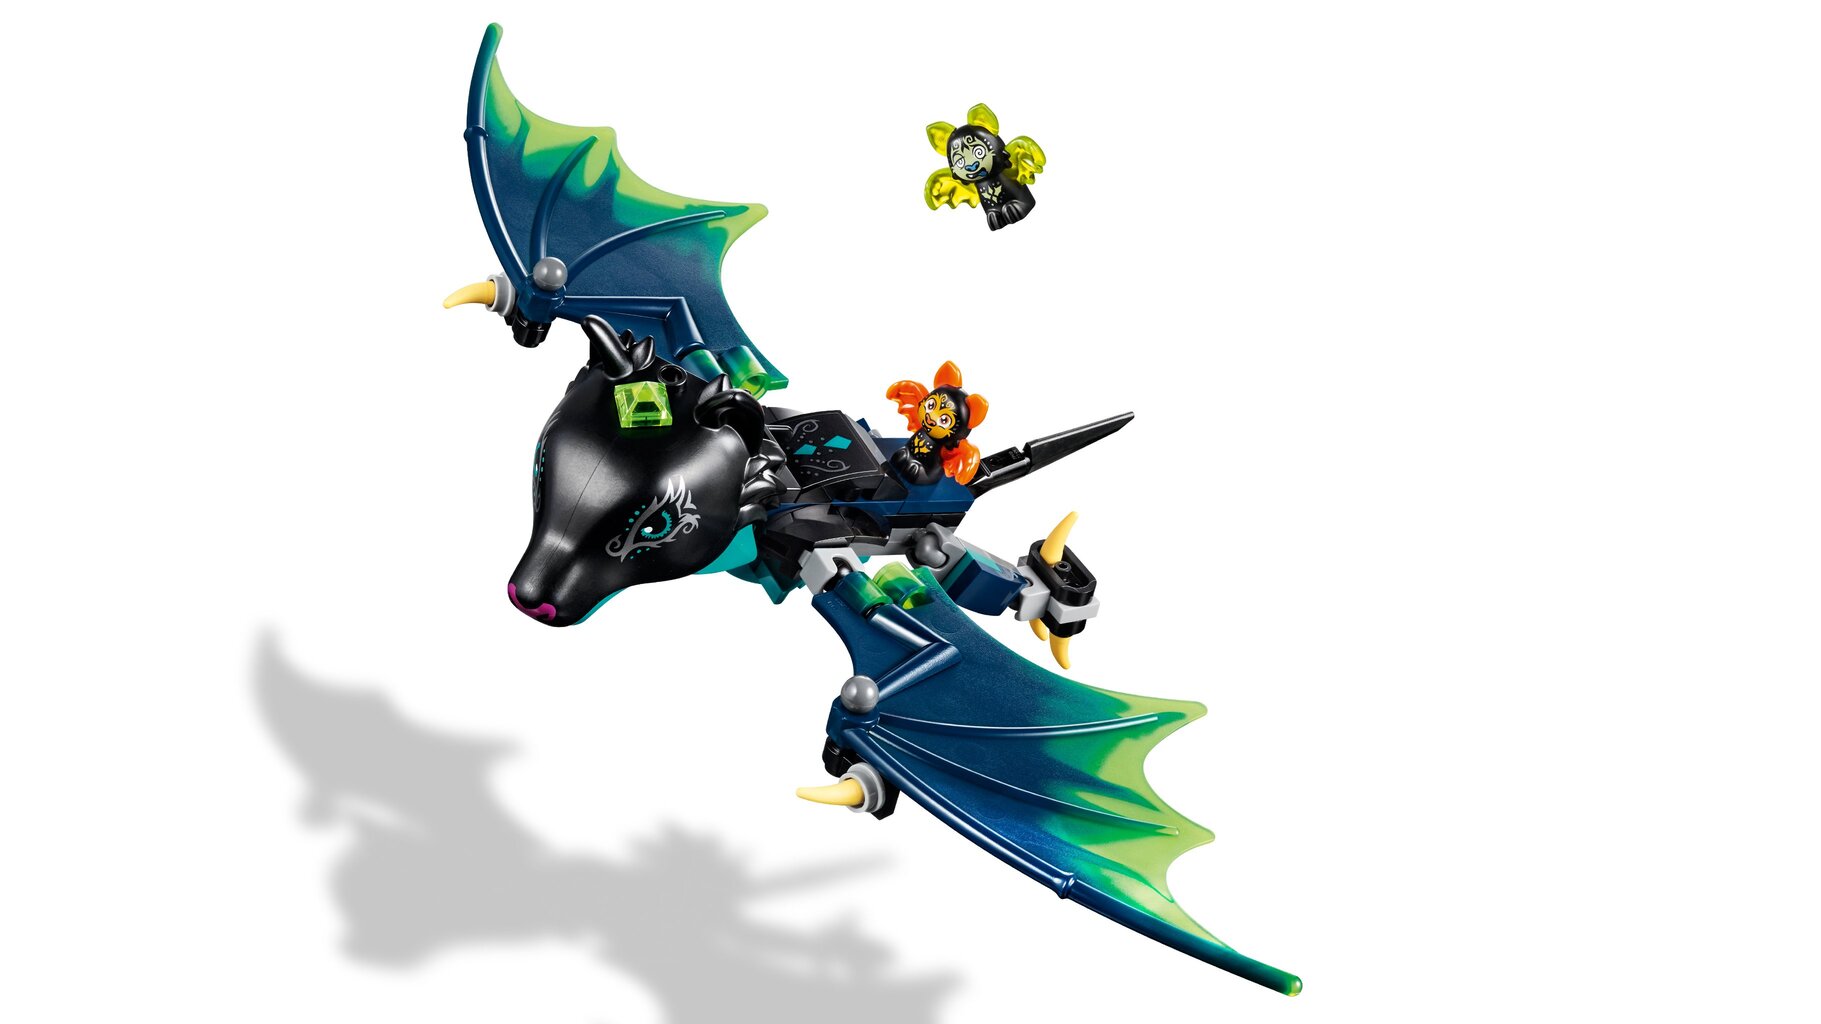 41196 LEGO® ELVES Šikšnosparnių ataka kaina ir informacija | Konstruktoriai ir kaladėlės | pigu.lt